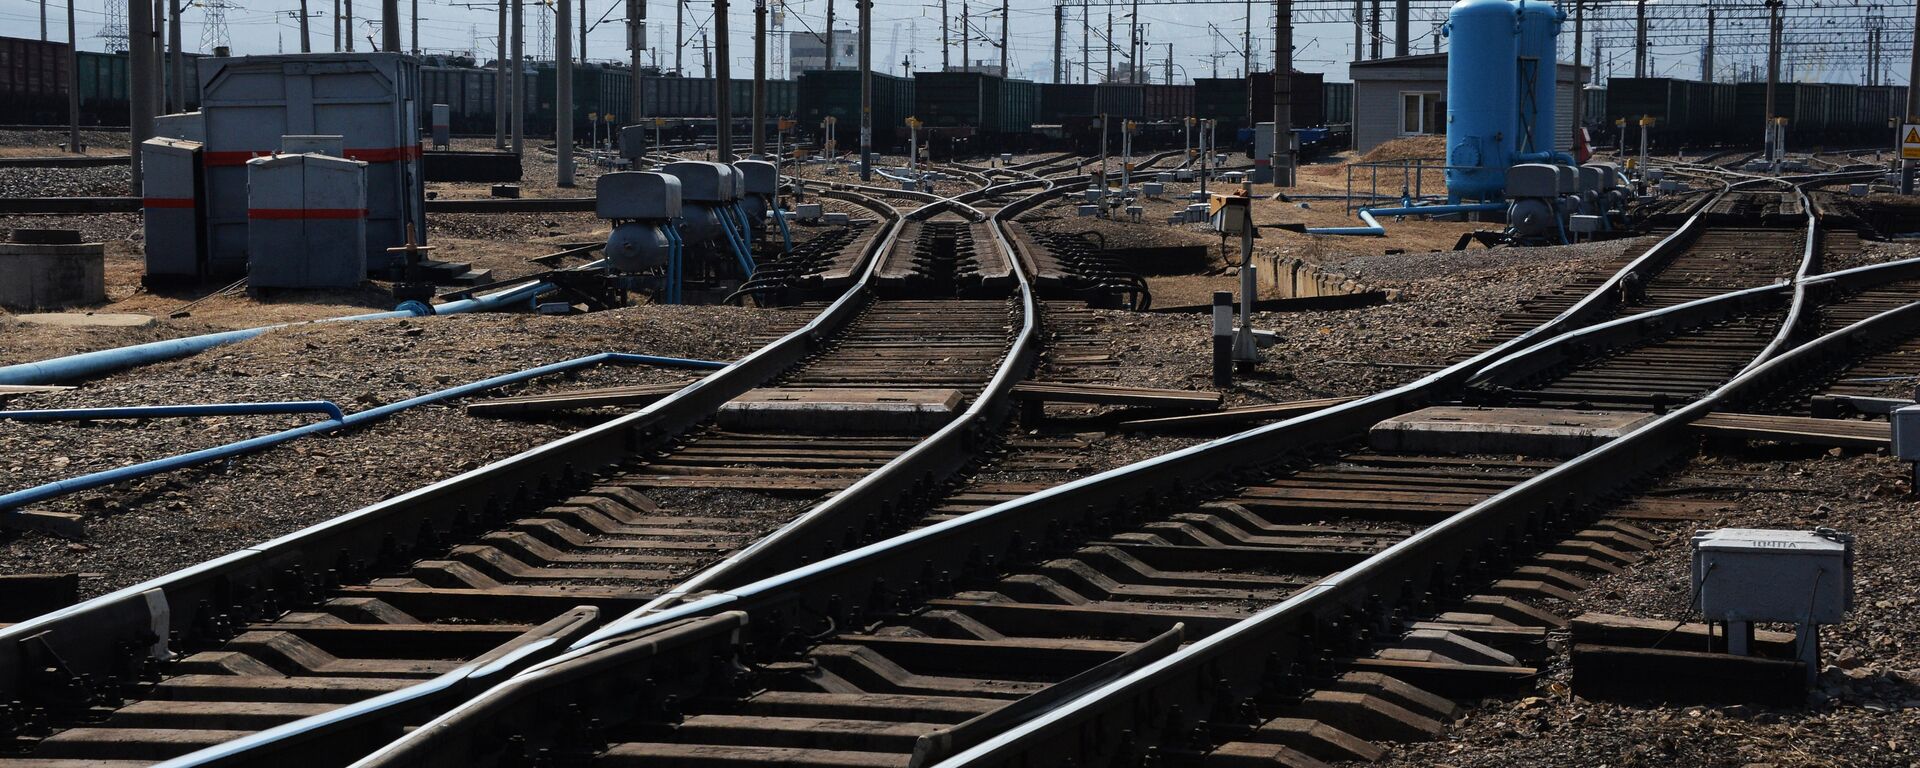 Крупнейшая припортовая ж/д станция Дальневосточной железной дороги Находка - Восточная - Sputnik Армения, 1920, 30.05.2021